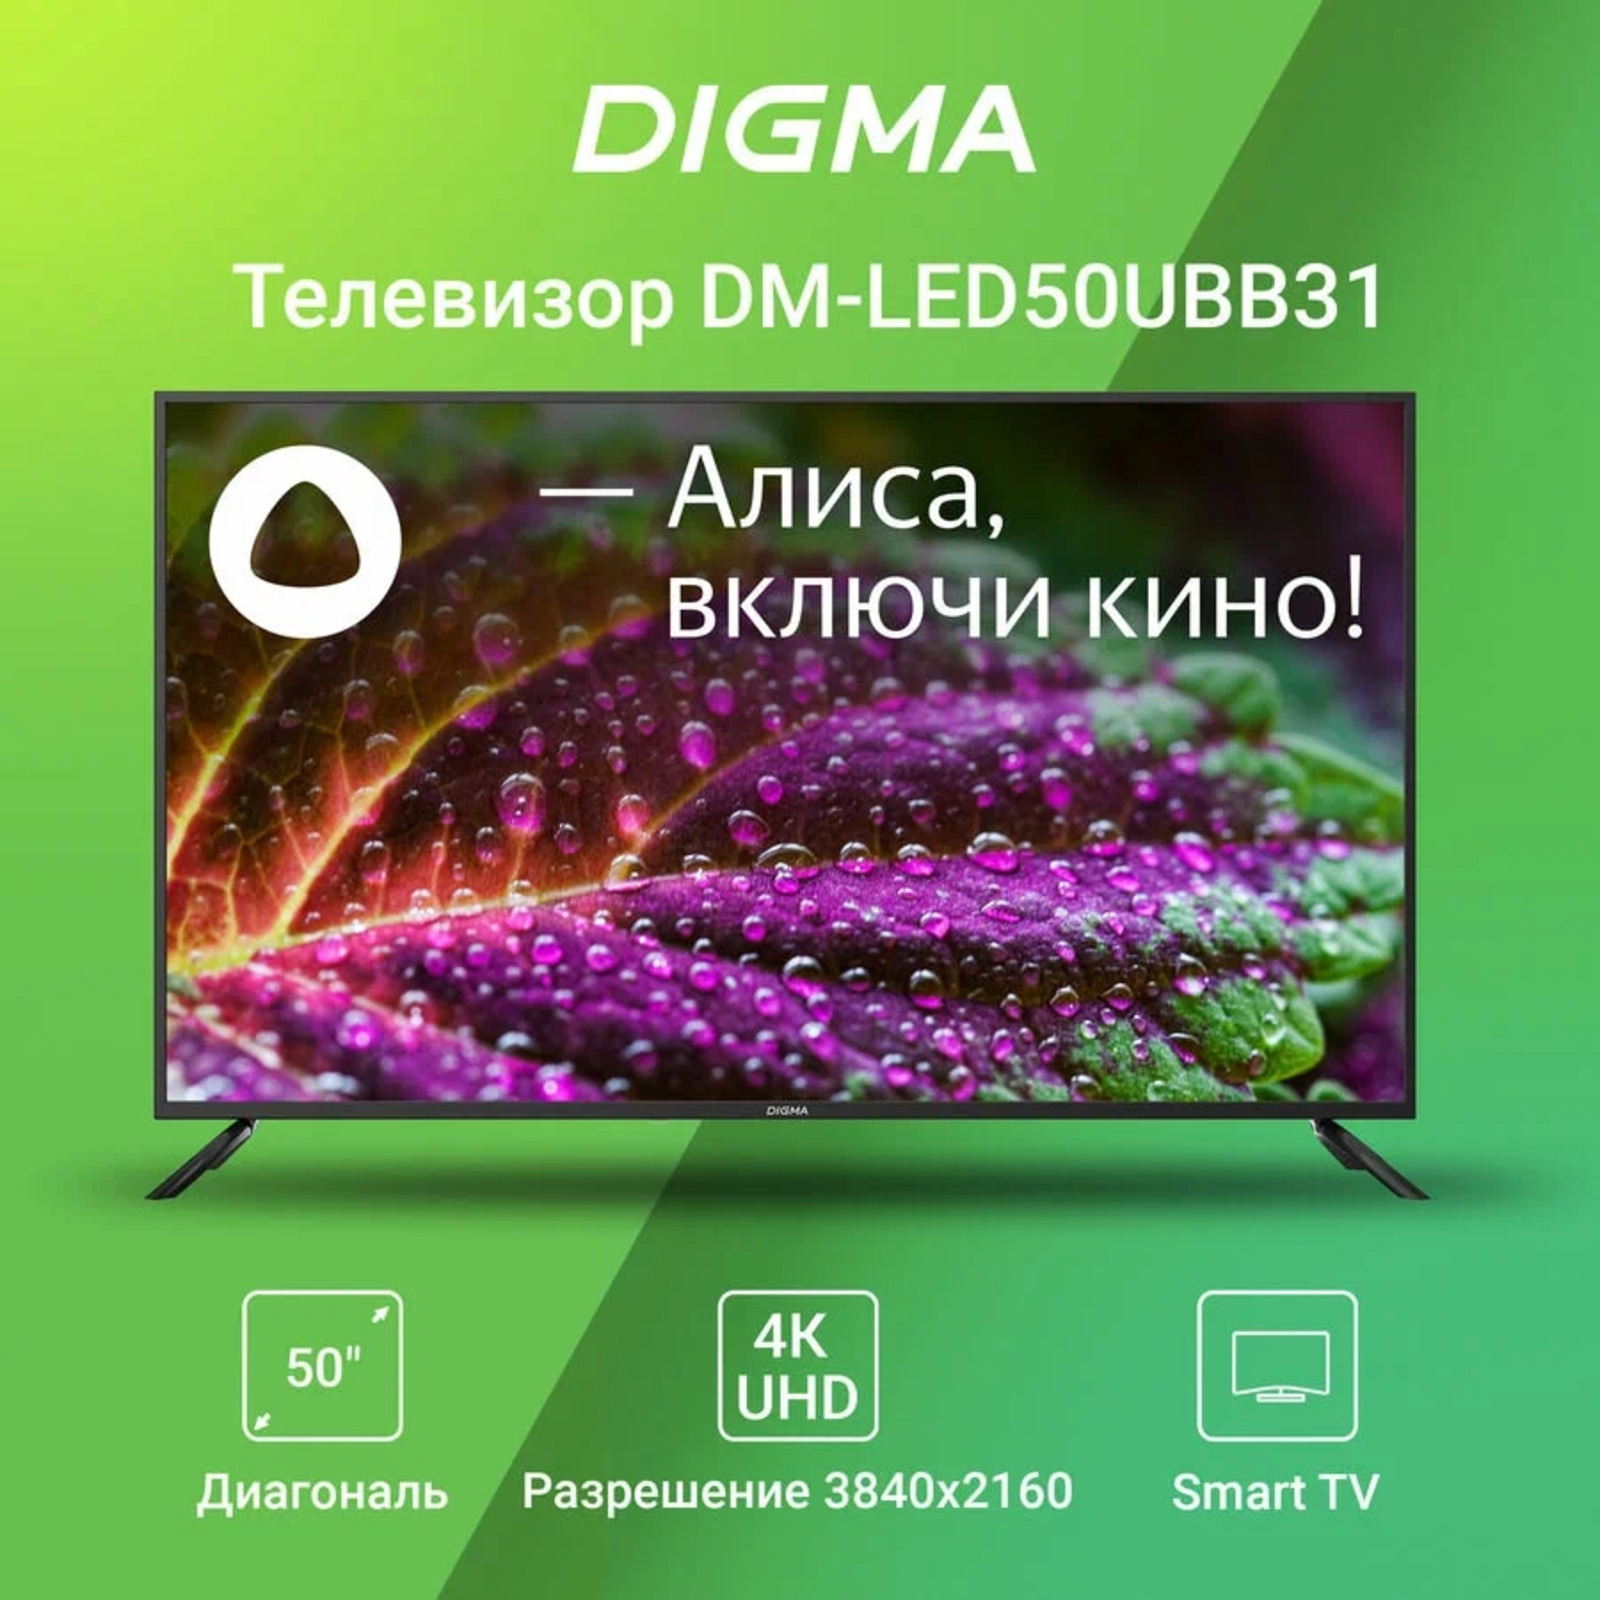 Телевизор digma 55. DM-led55ubb31. Телевизор Дигма 55 дюймов. Digma DM-led55ubb31 55" Алиса.